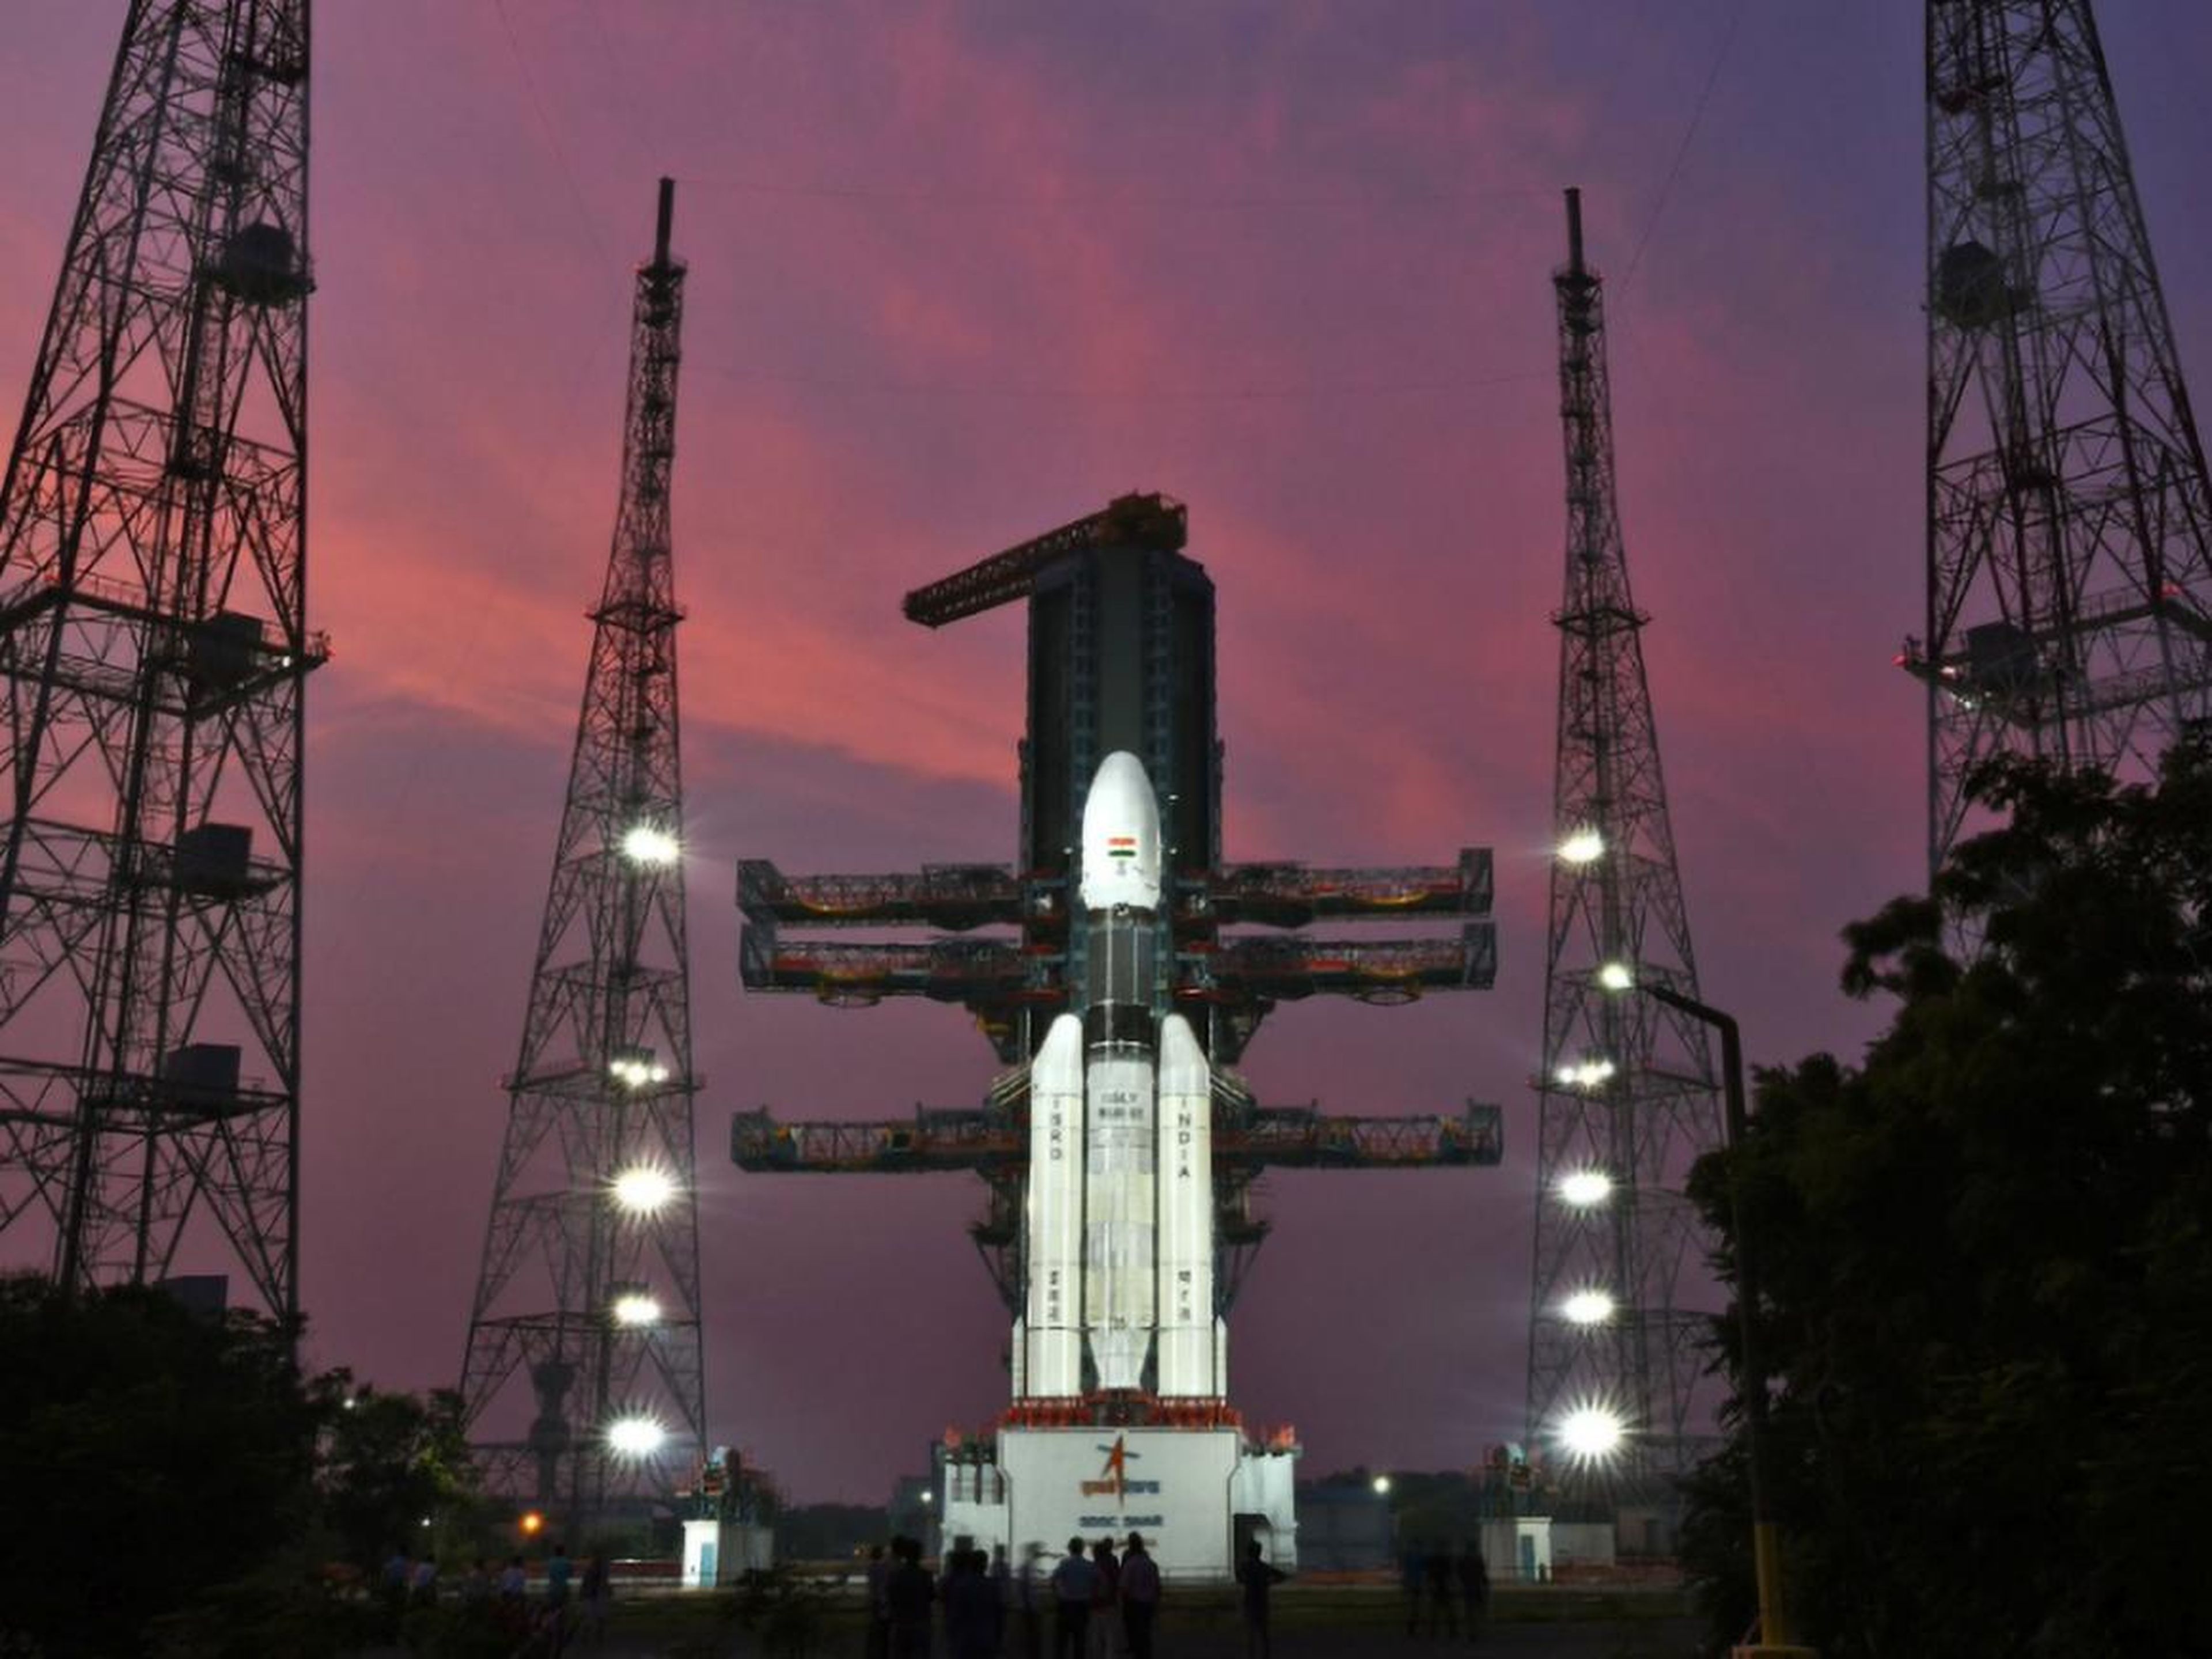 El ISRO prepara el lanzamiento del GSLV mark III, el cohete que enviará a la misión Chandrayaan-2 a la luna